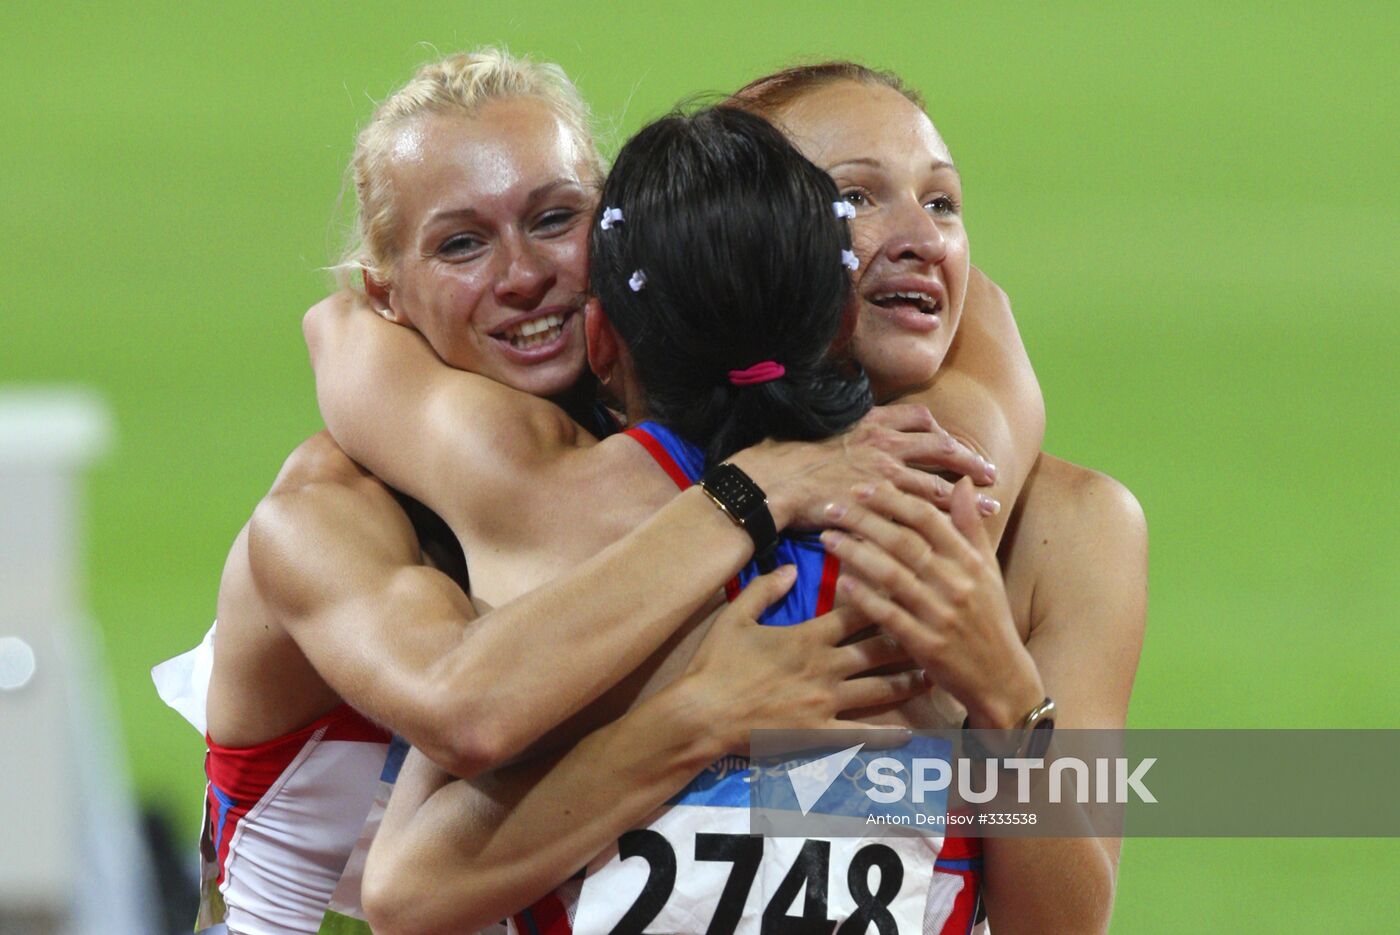 Beijing 2008 Olympics, women's 4x100m relay